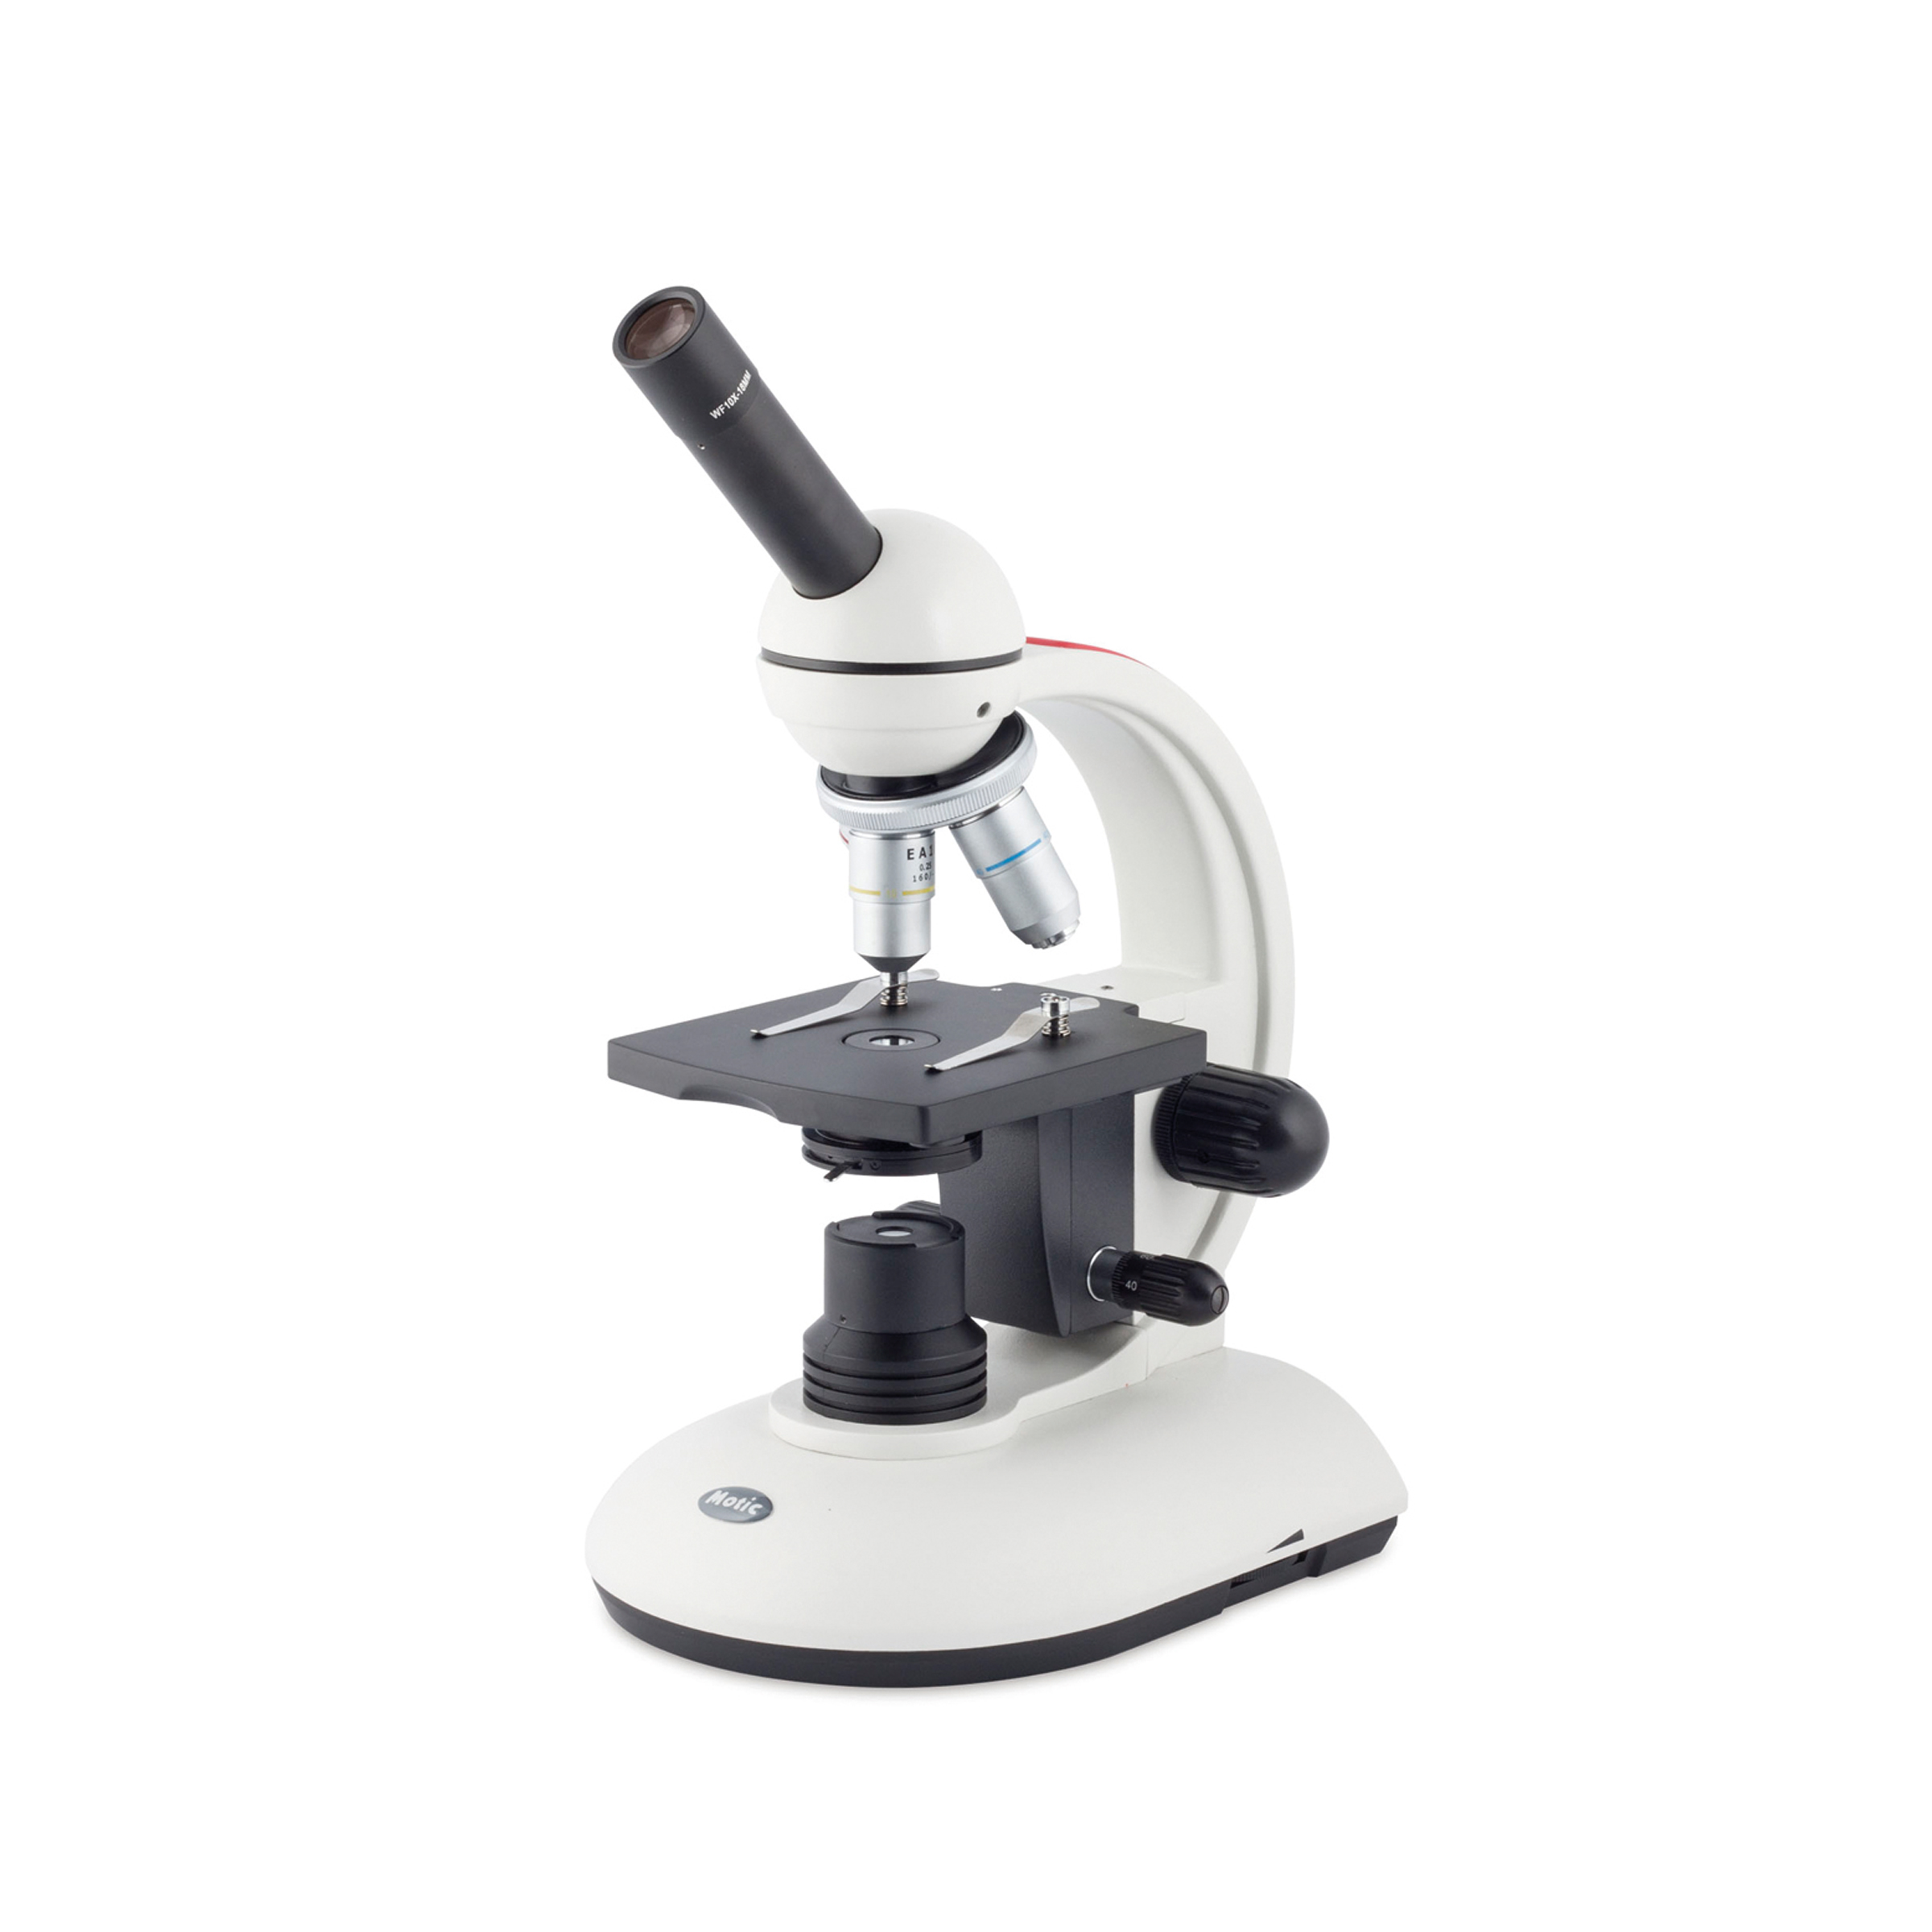 Neuheiten - Mikroskopie